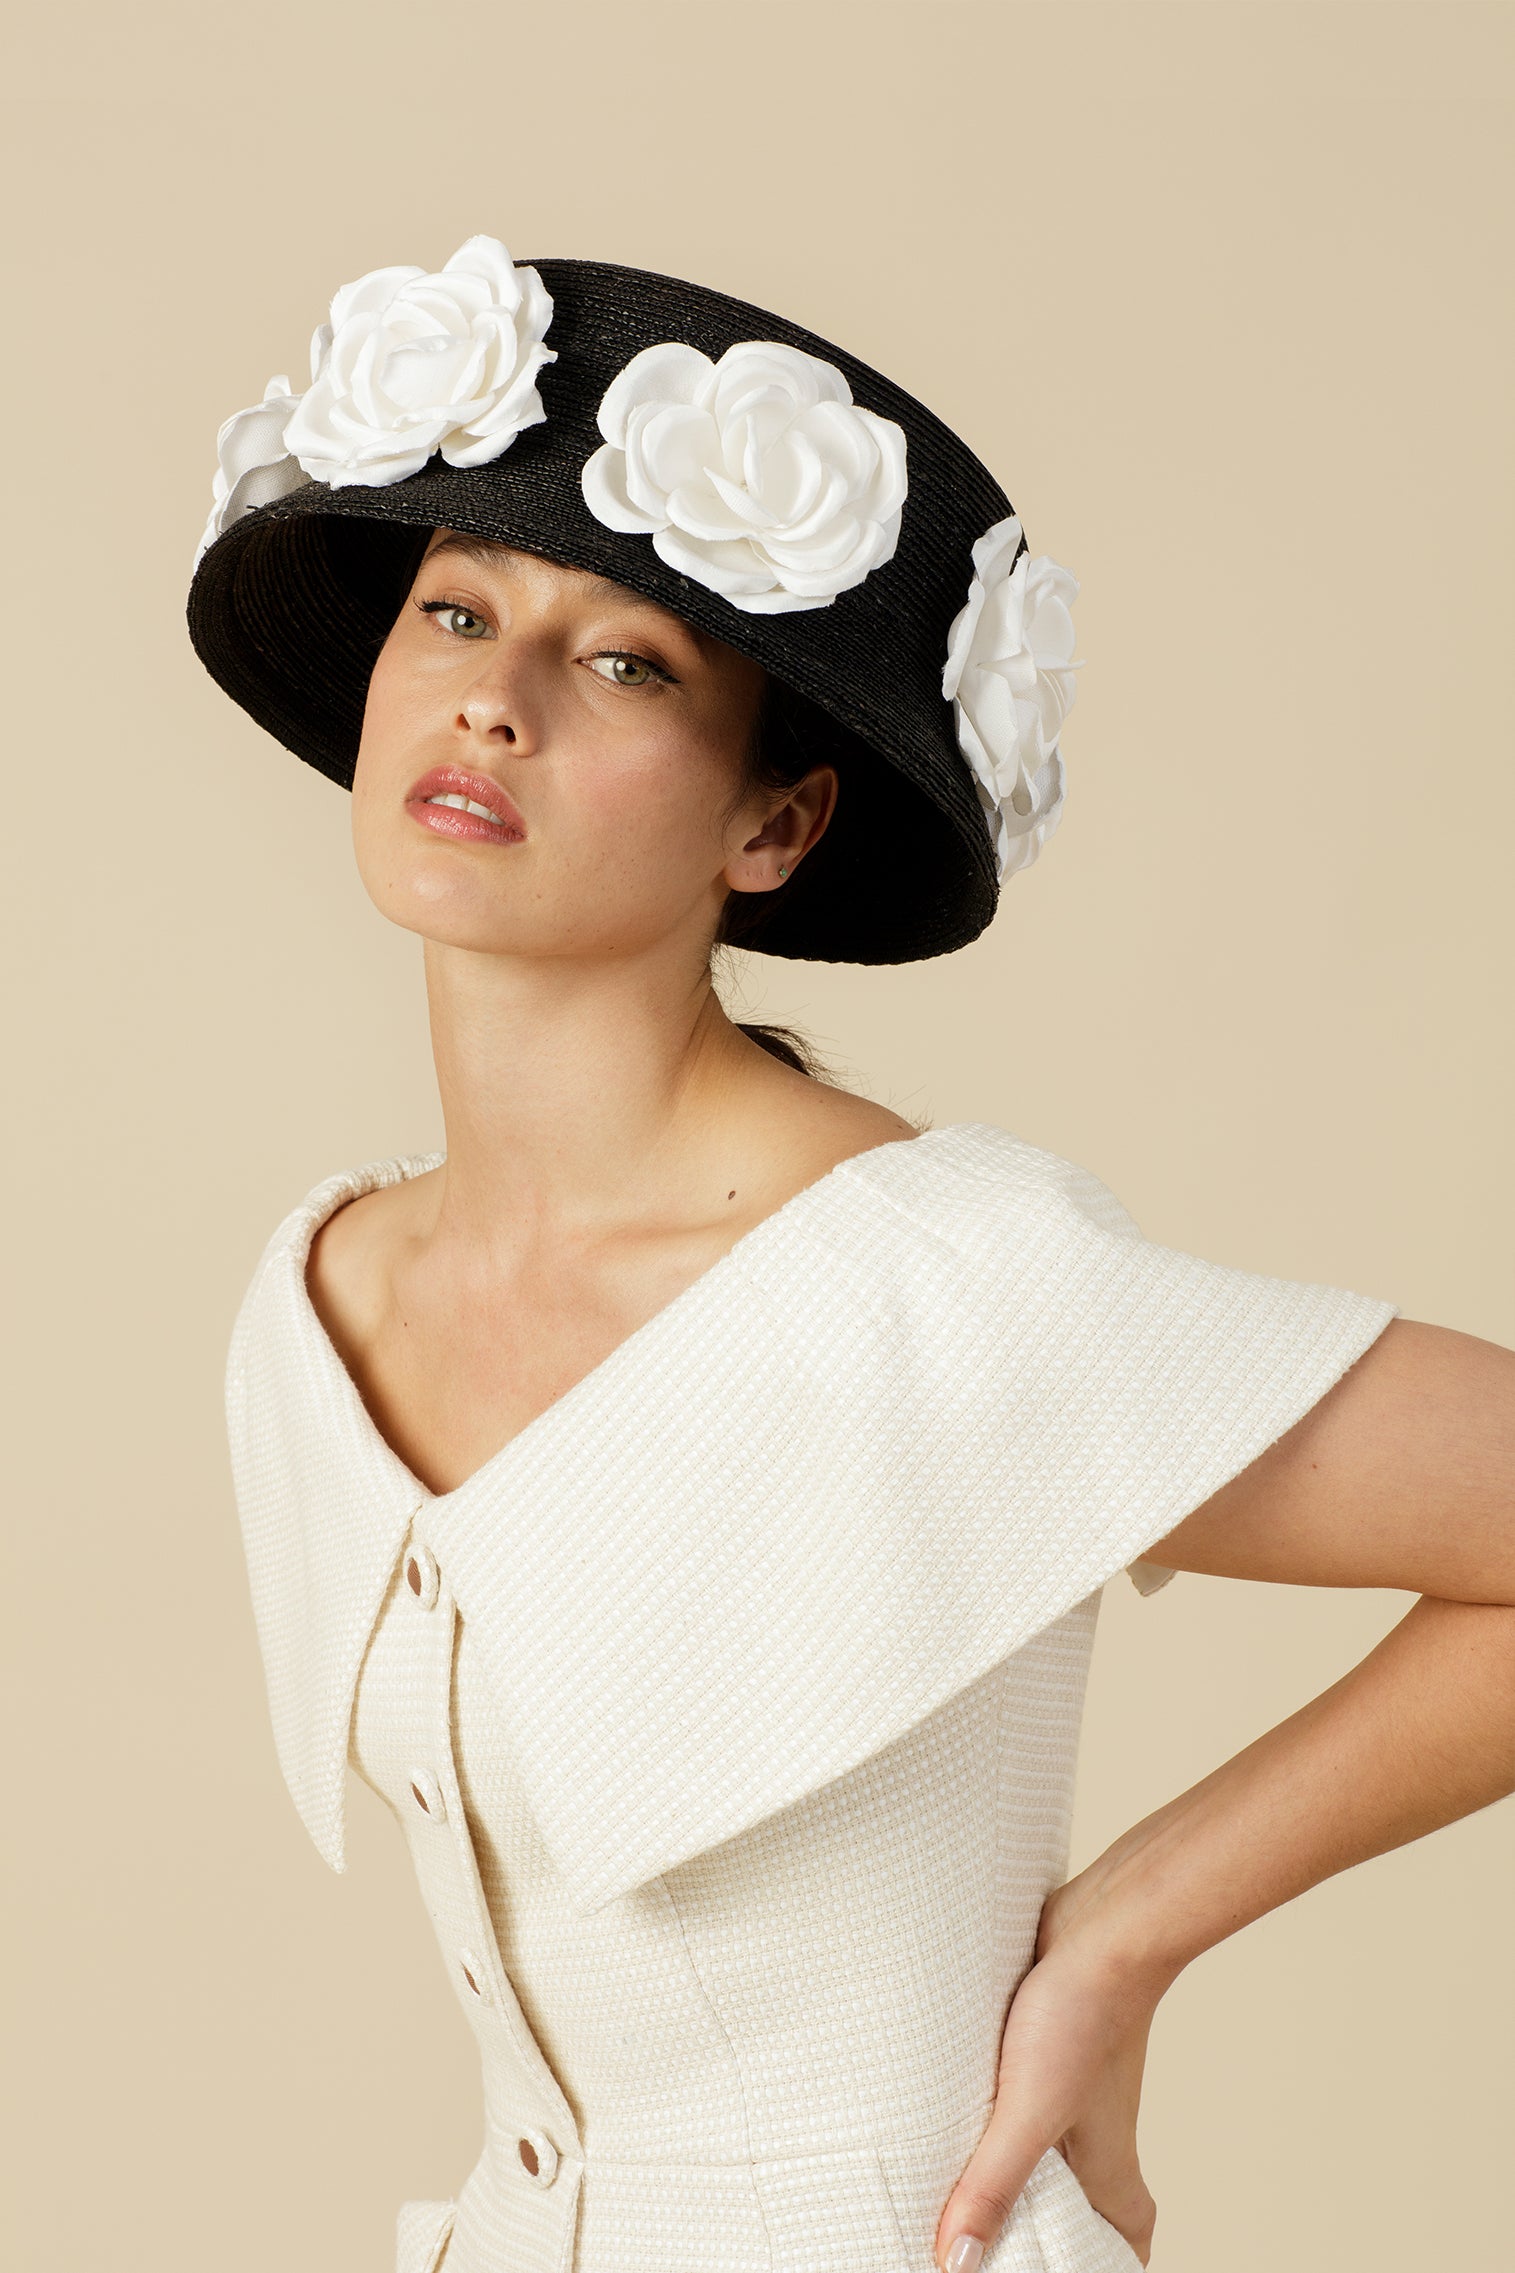 O'Keeffe Hat - Kentucky Derby Hats for Women - Lock & Co. Hatters London UK